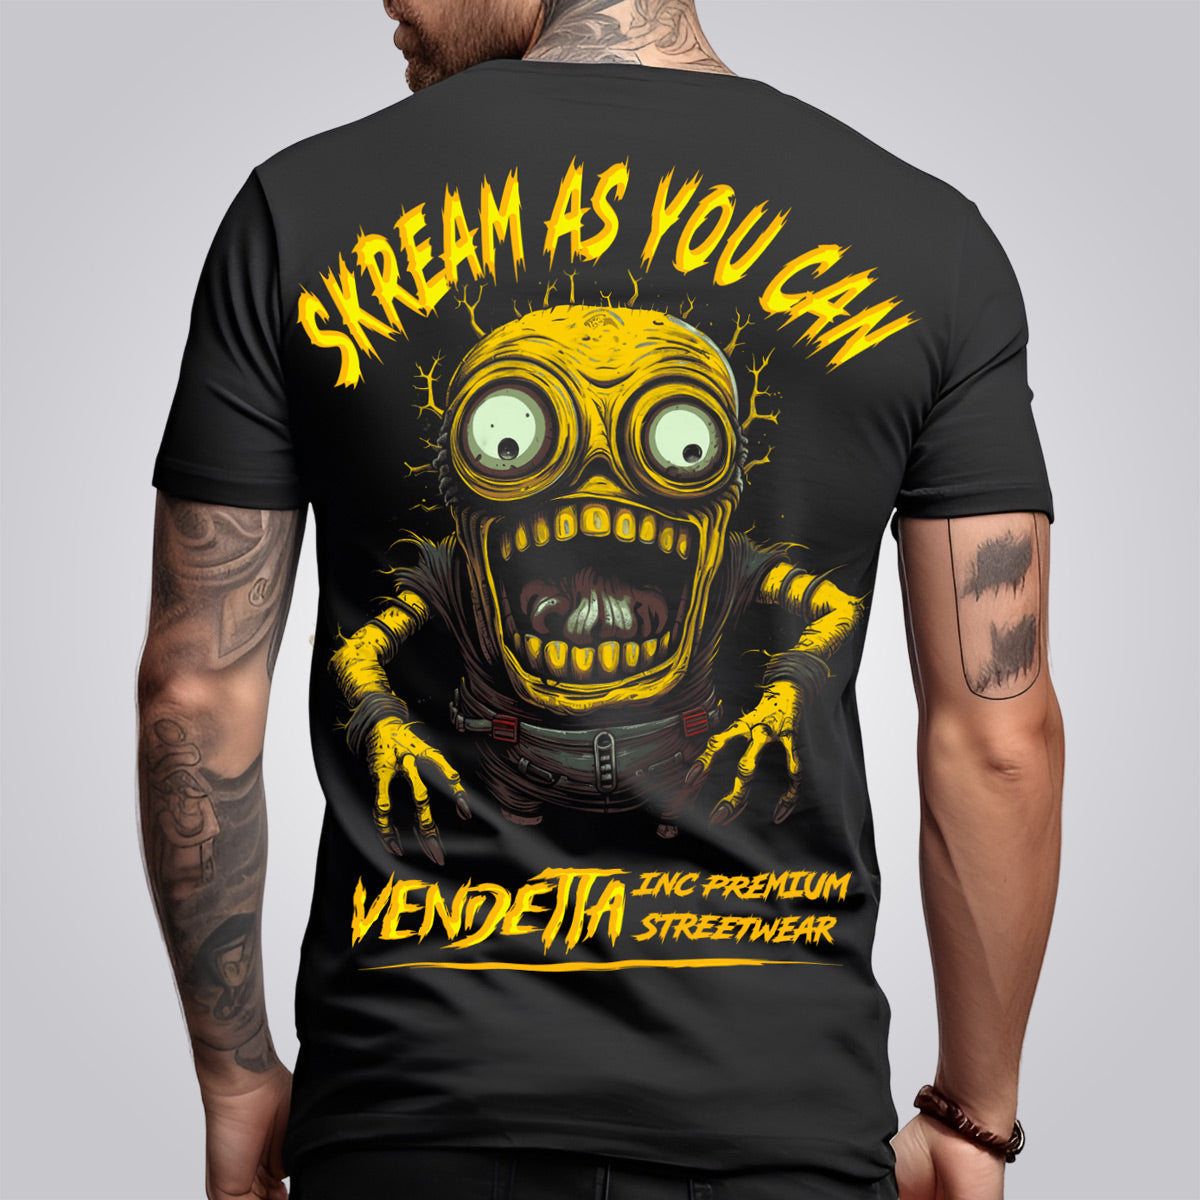 Vendetta Inc. Shirt Skream as you Can schwarz